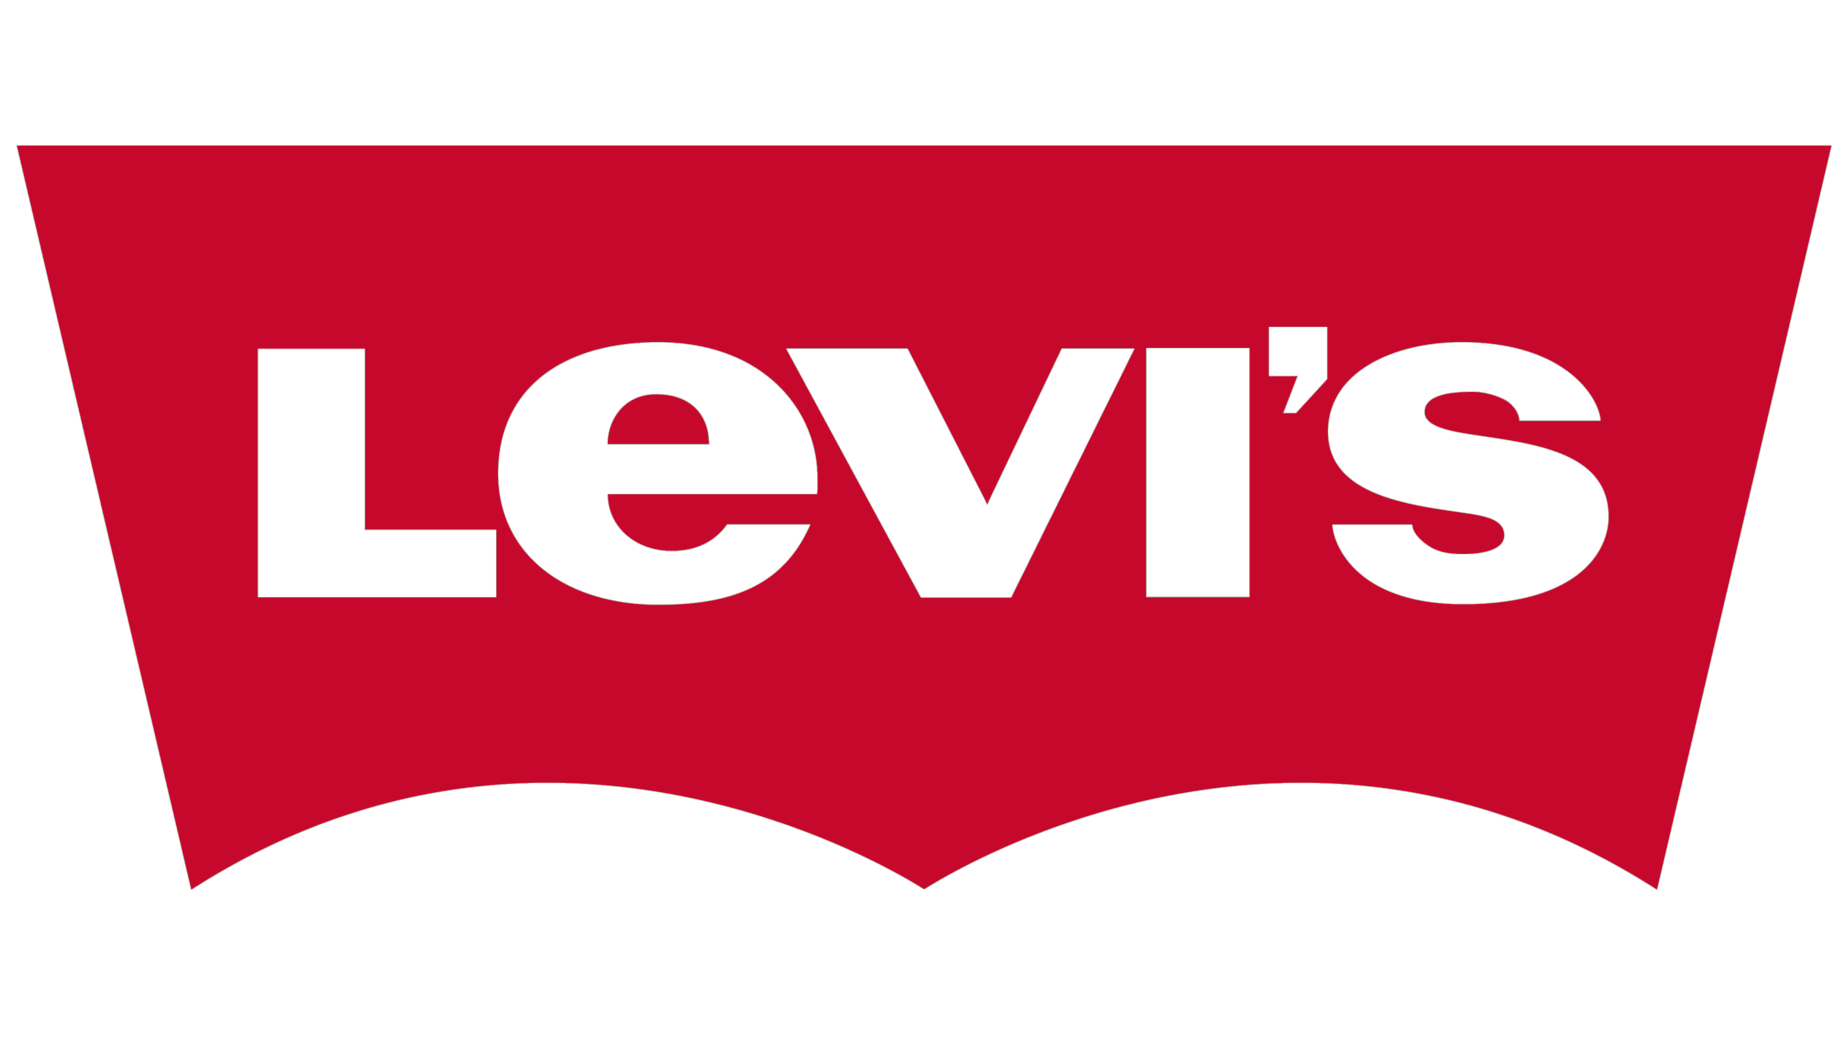 Levis sign